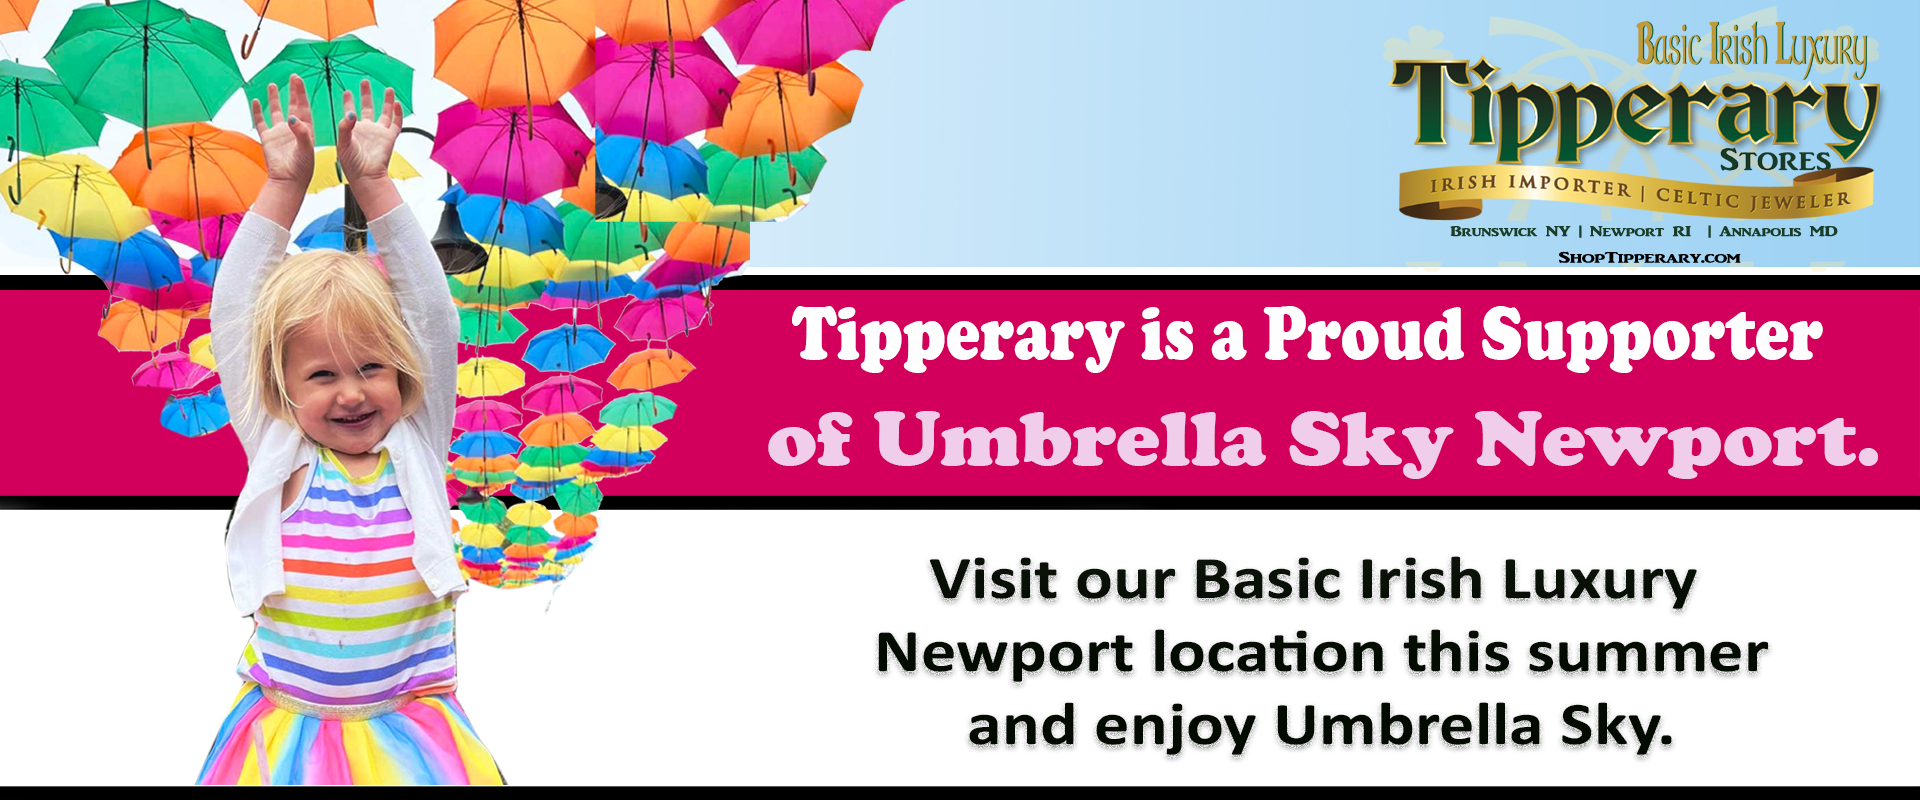 Umbrella Sky Newport